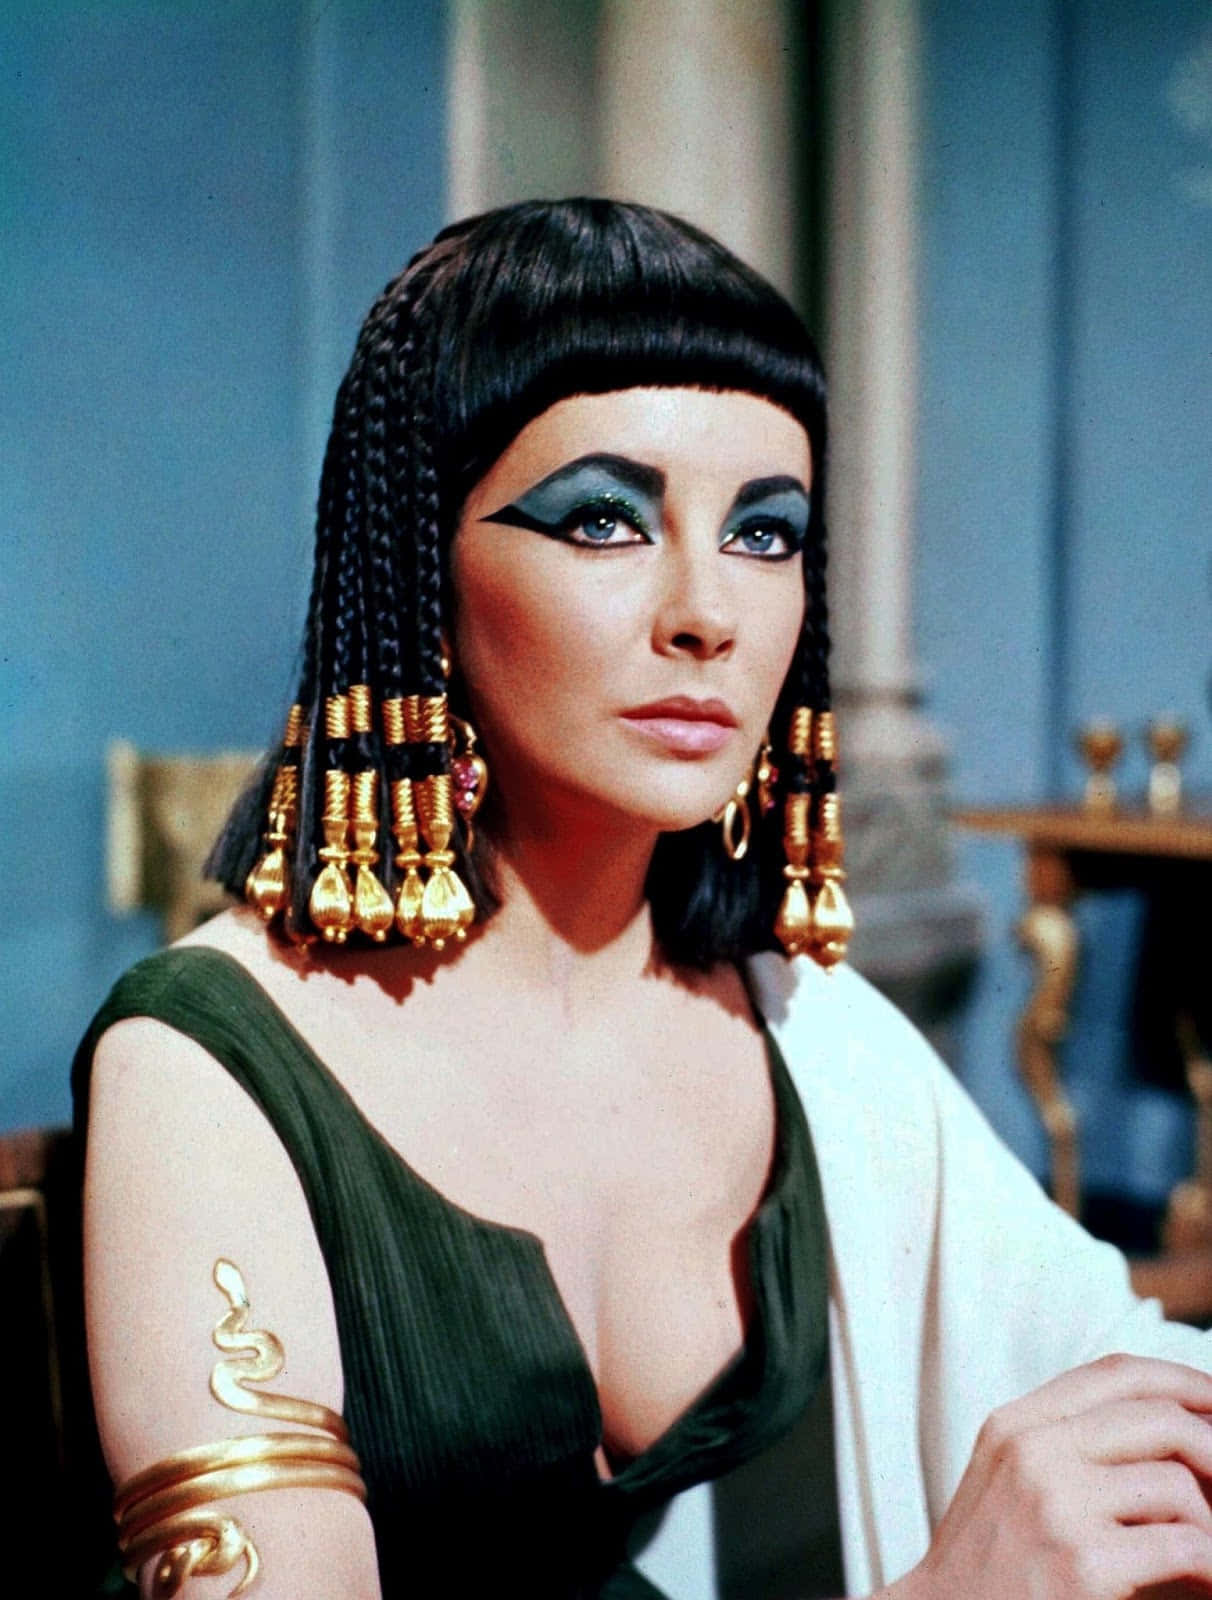 Laregina Cleopatra Vii Fa Rivivere La Nobiltà Dell'antico Egitto.